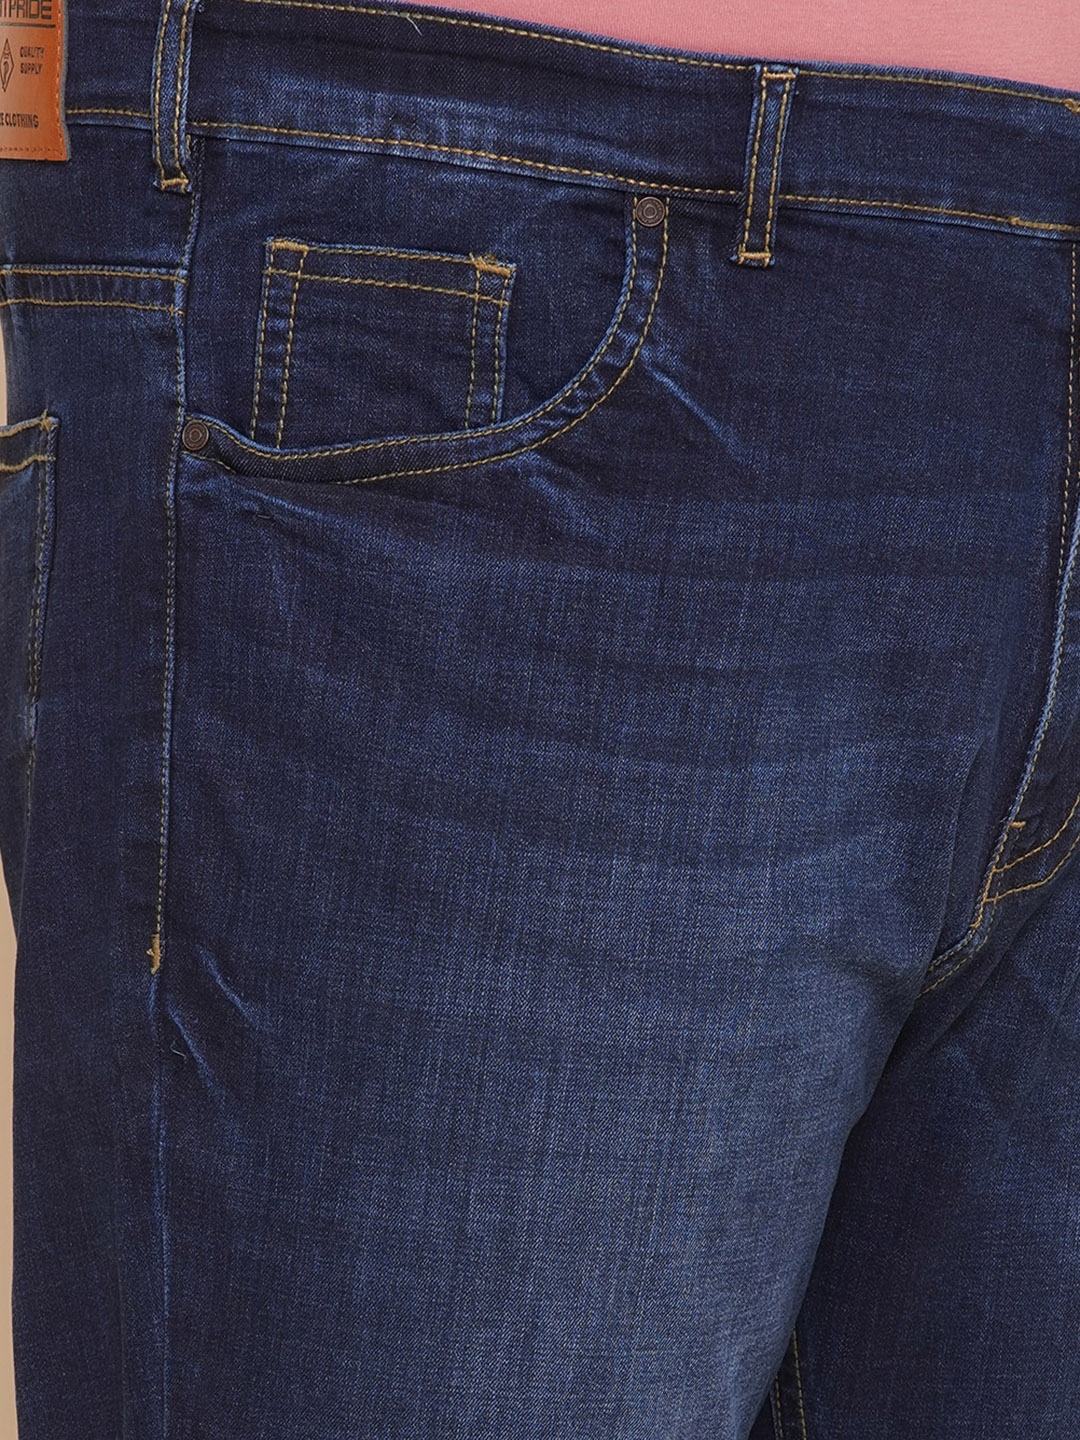 bottomwear/jeans/JPJ12203/jpj12203-2.jpg